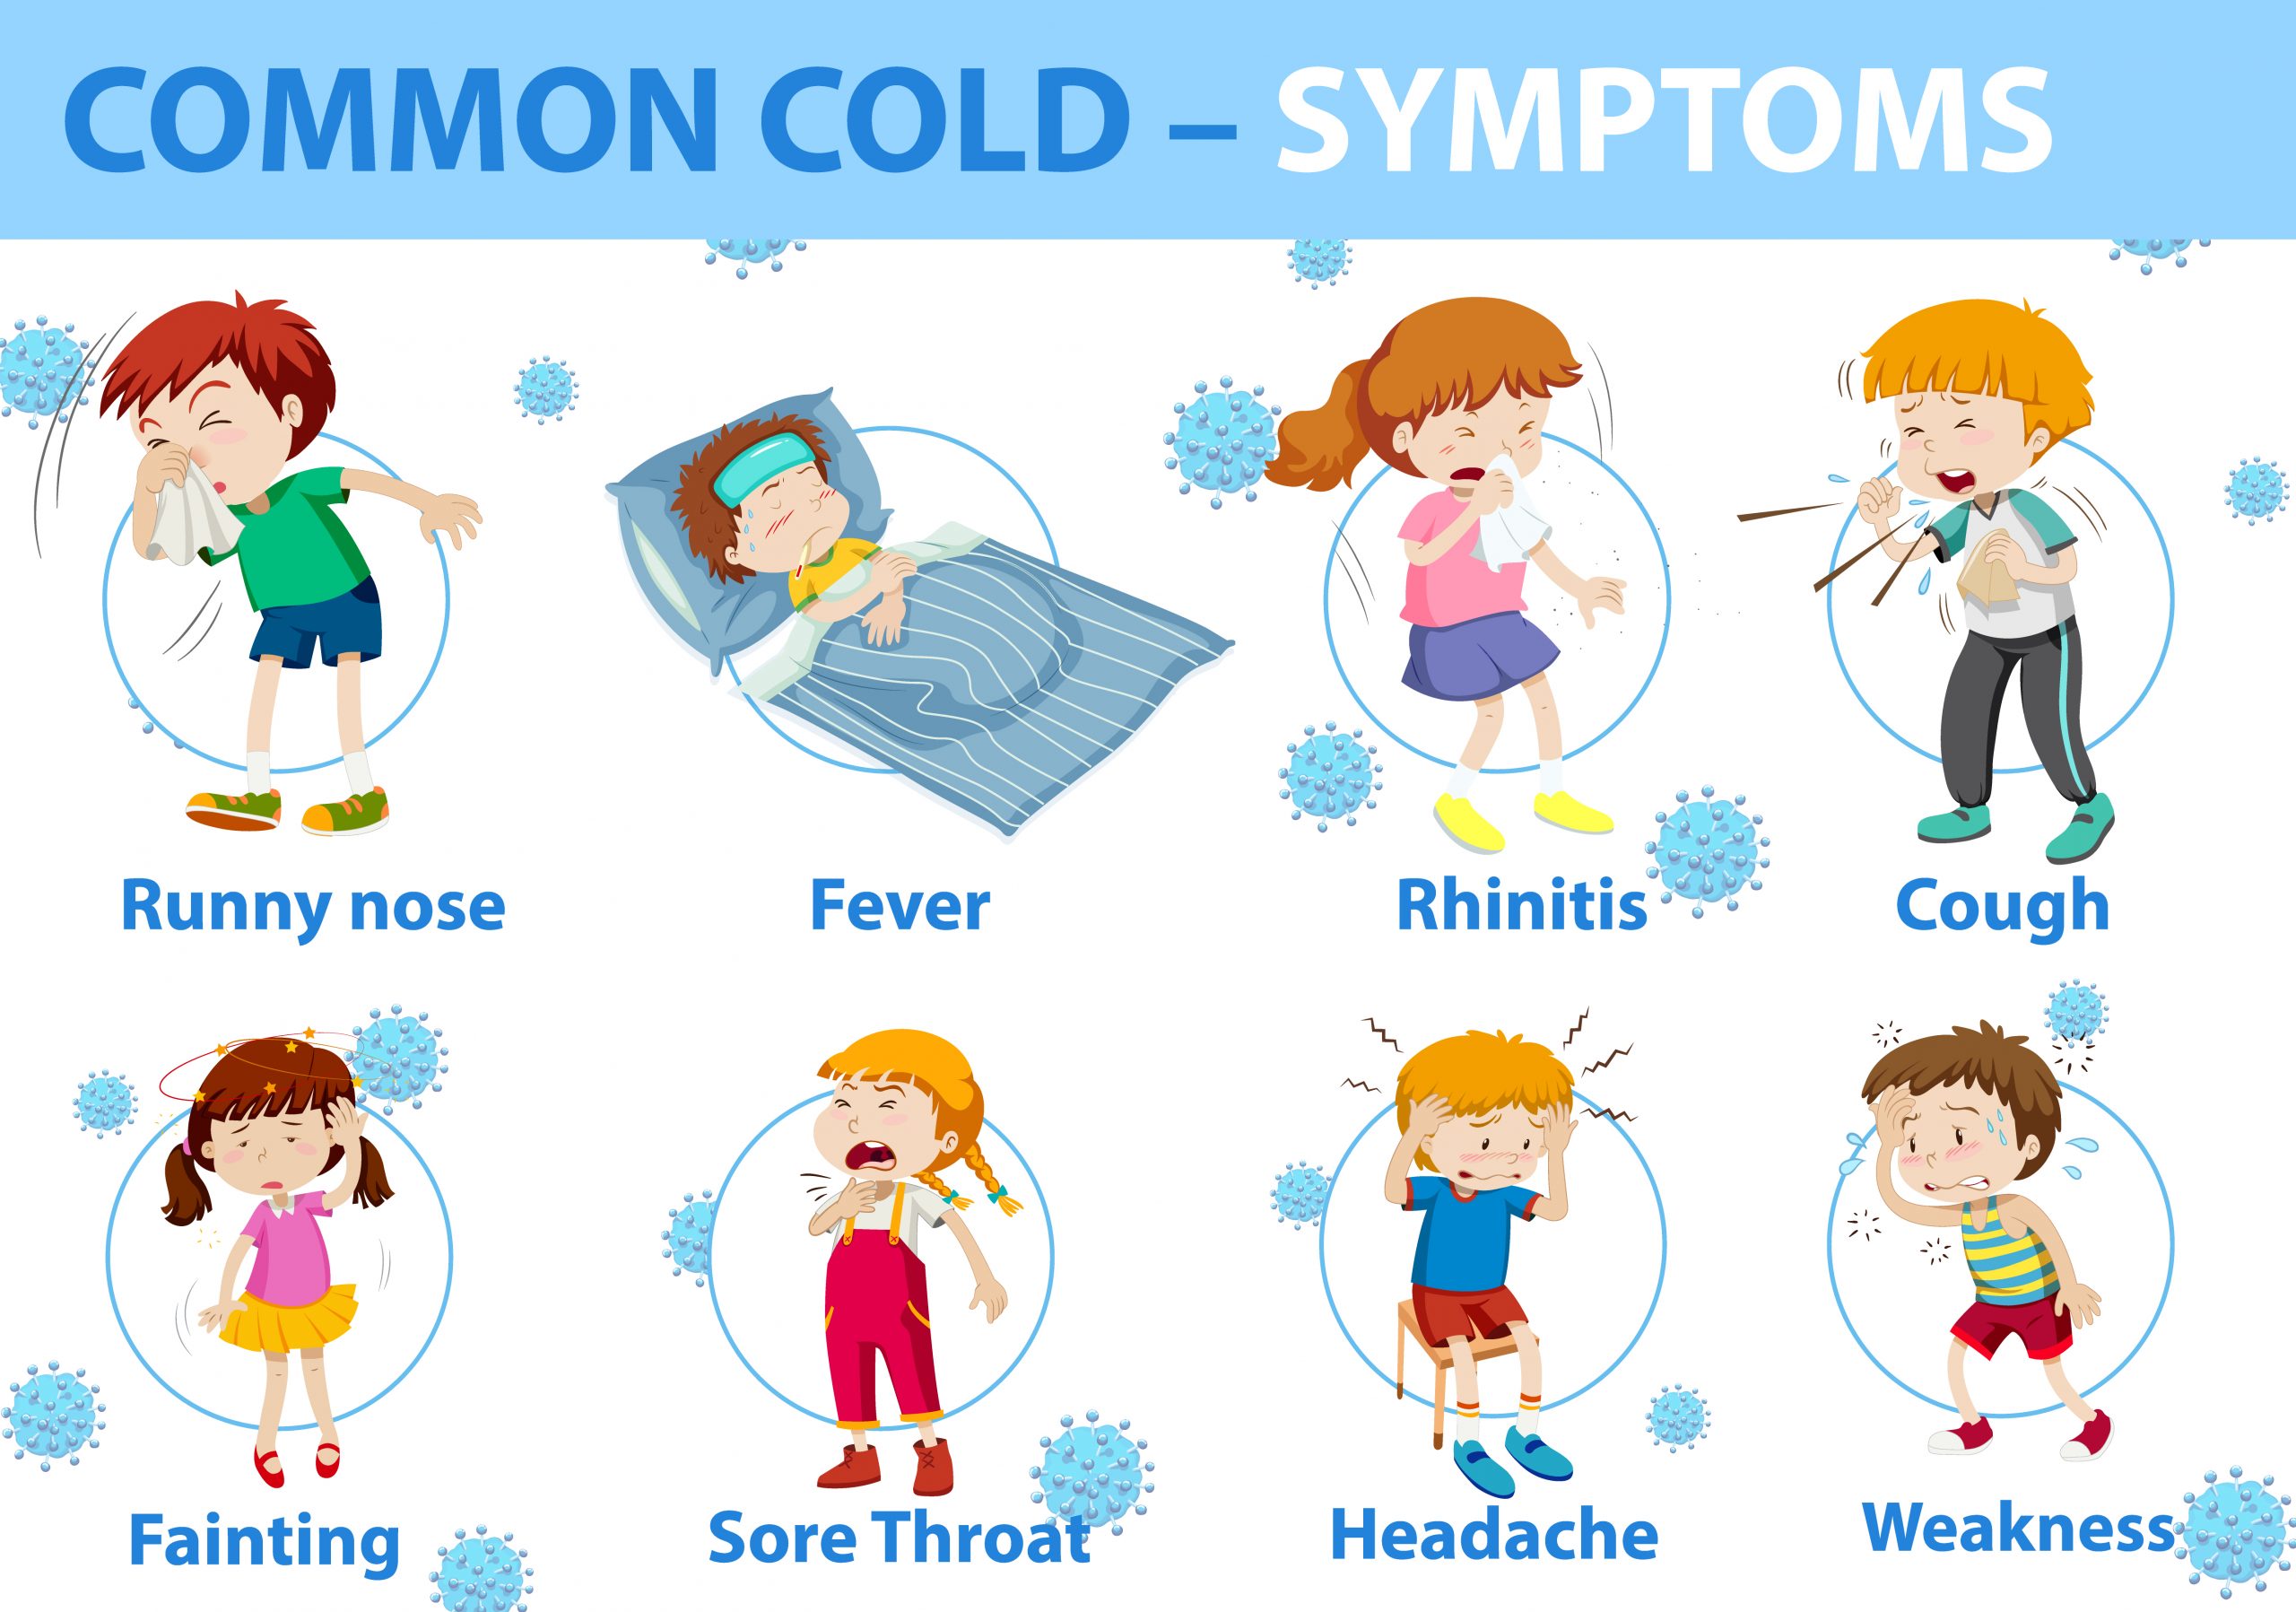 Common cold. Symptoms of Cold. Простуда векторное изображение. Картинки мультяшные с признаками простуды. Забота о здоровье. Симптомы простуды. Раскраска.